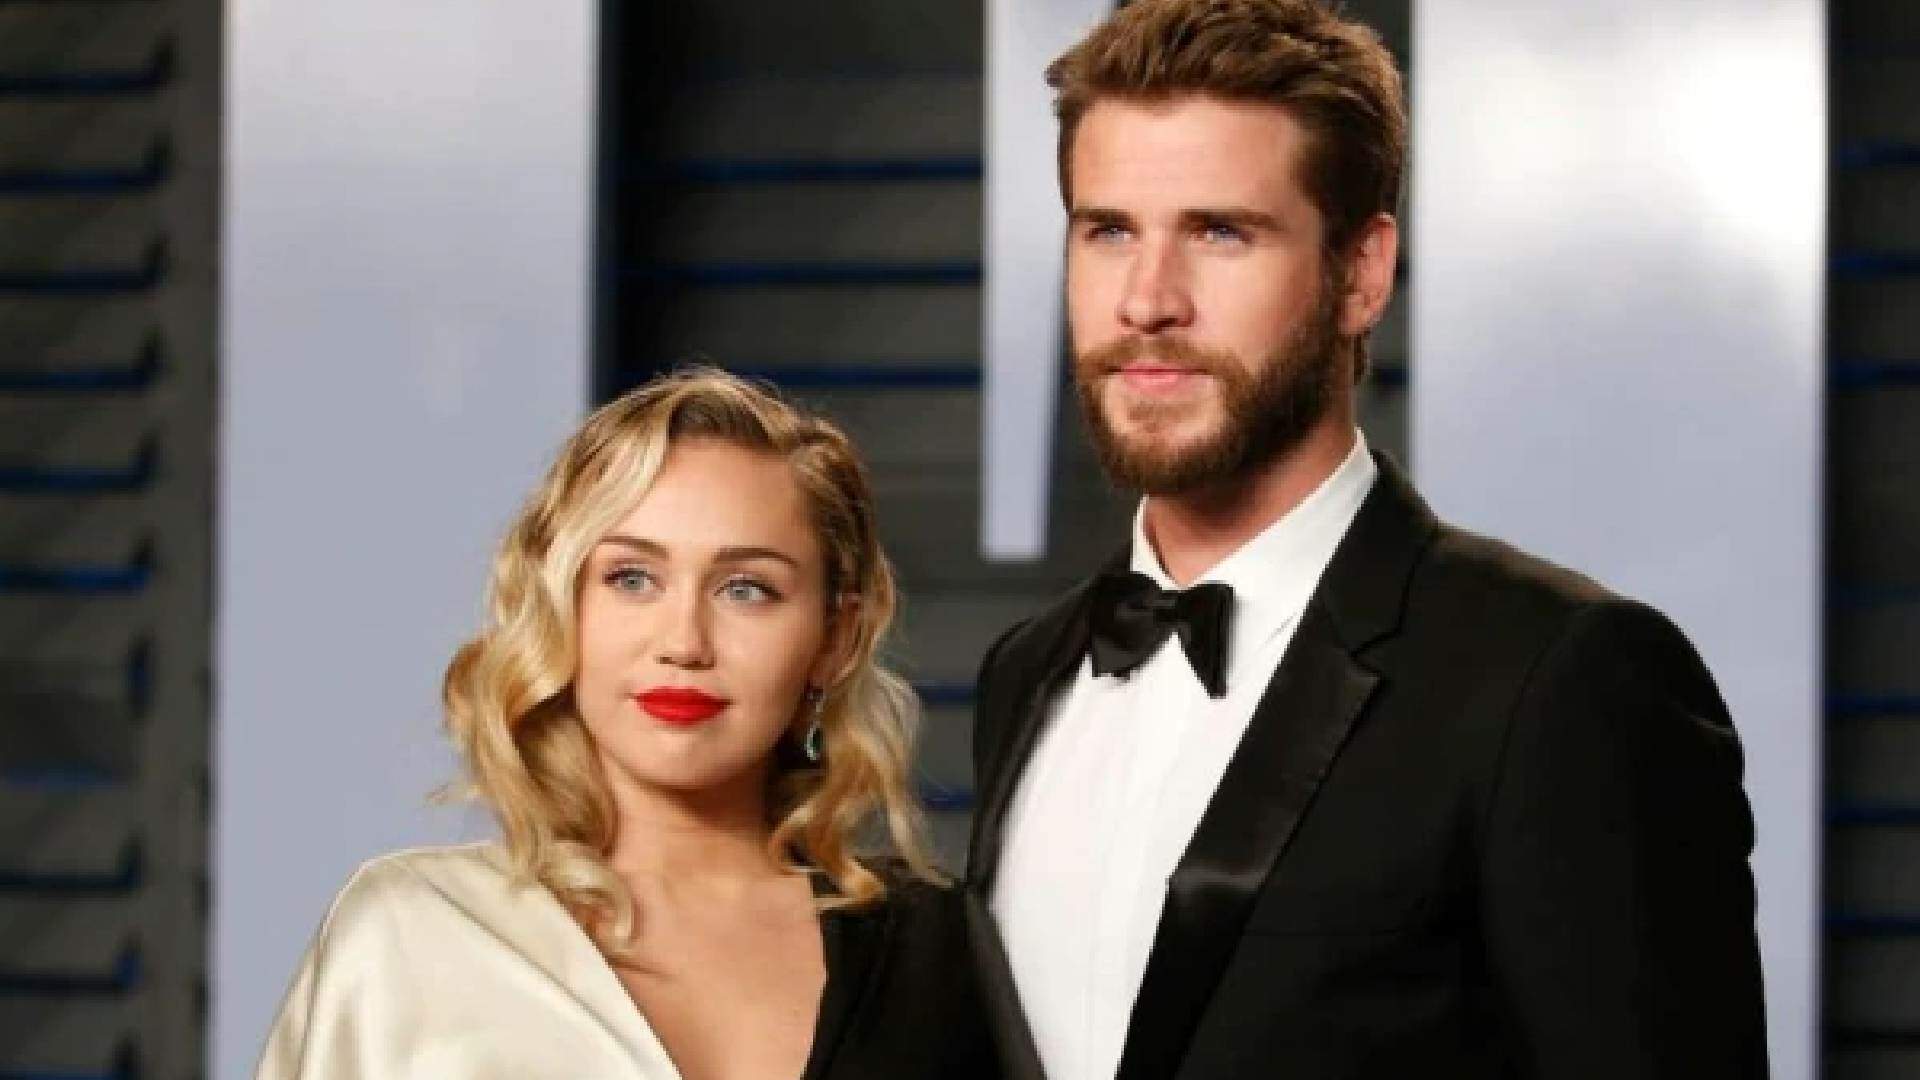 Web relembra divórcio de Miley Cyrus com Liam Hemsworth e artista explica fim do casamento